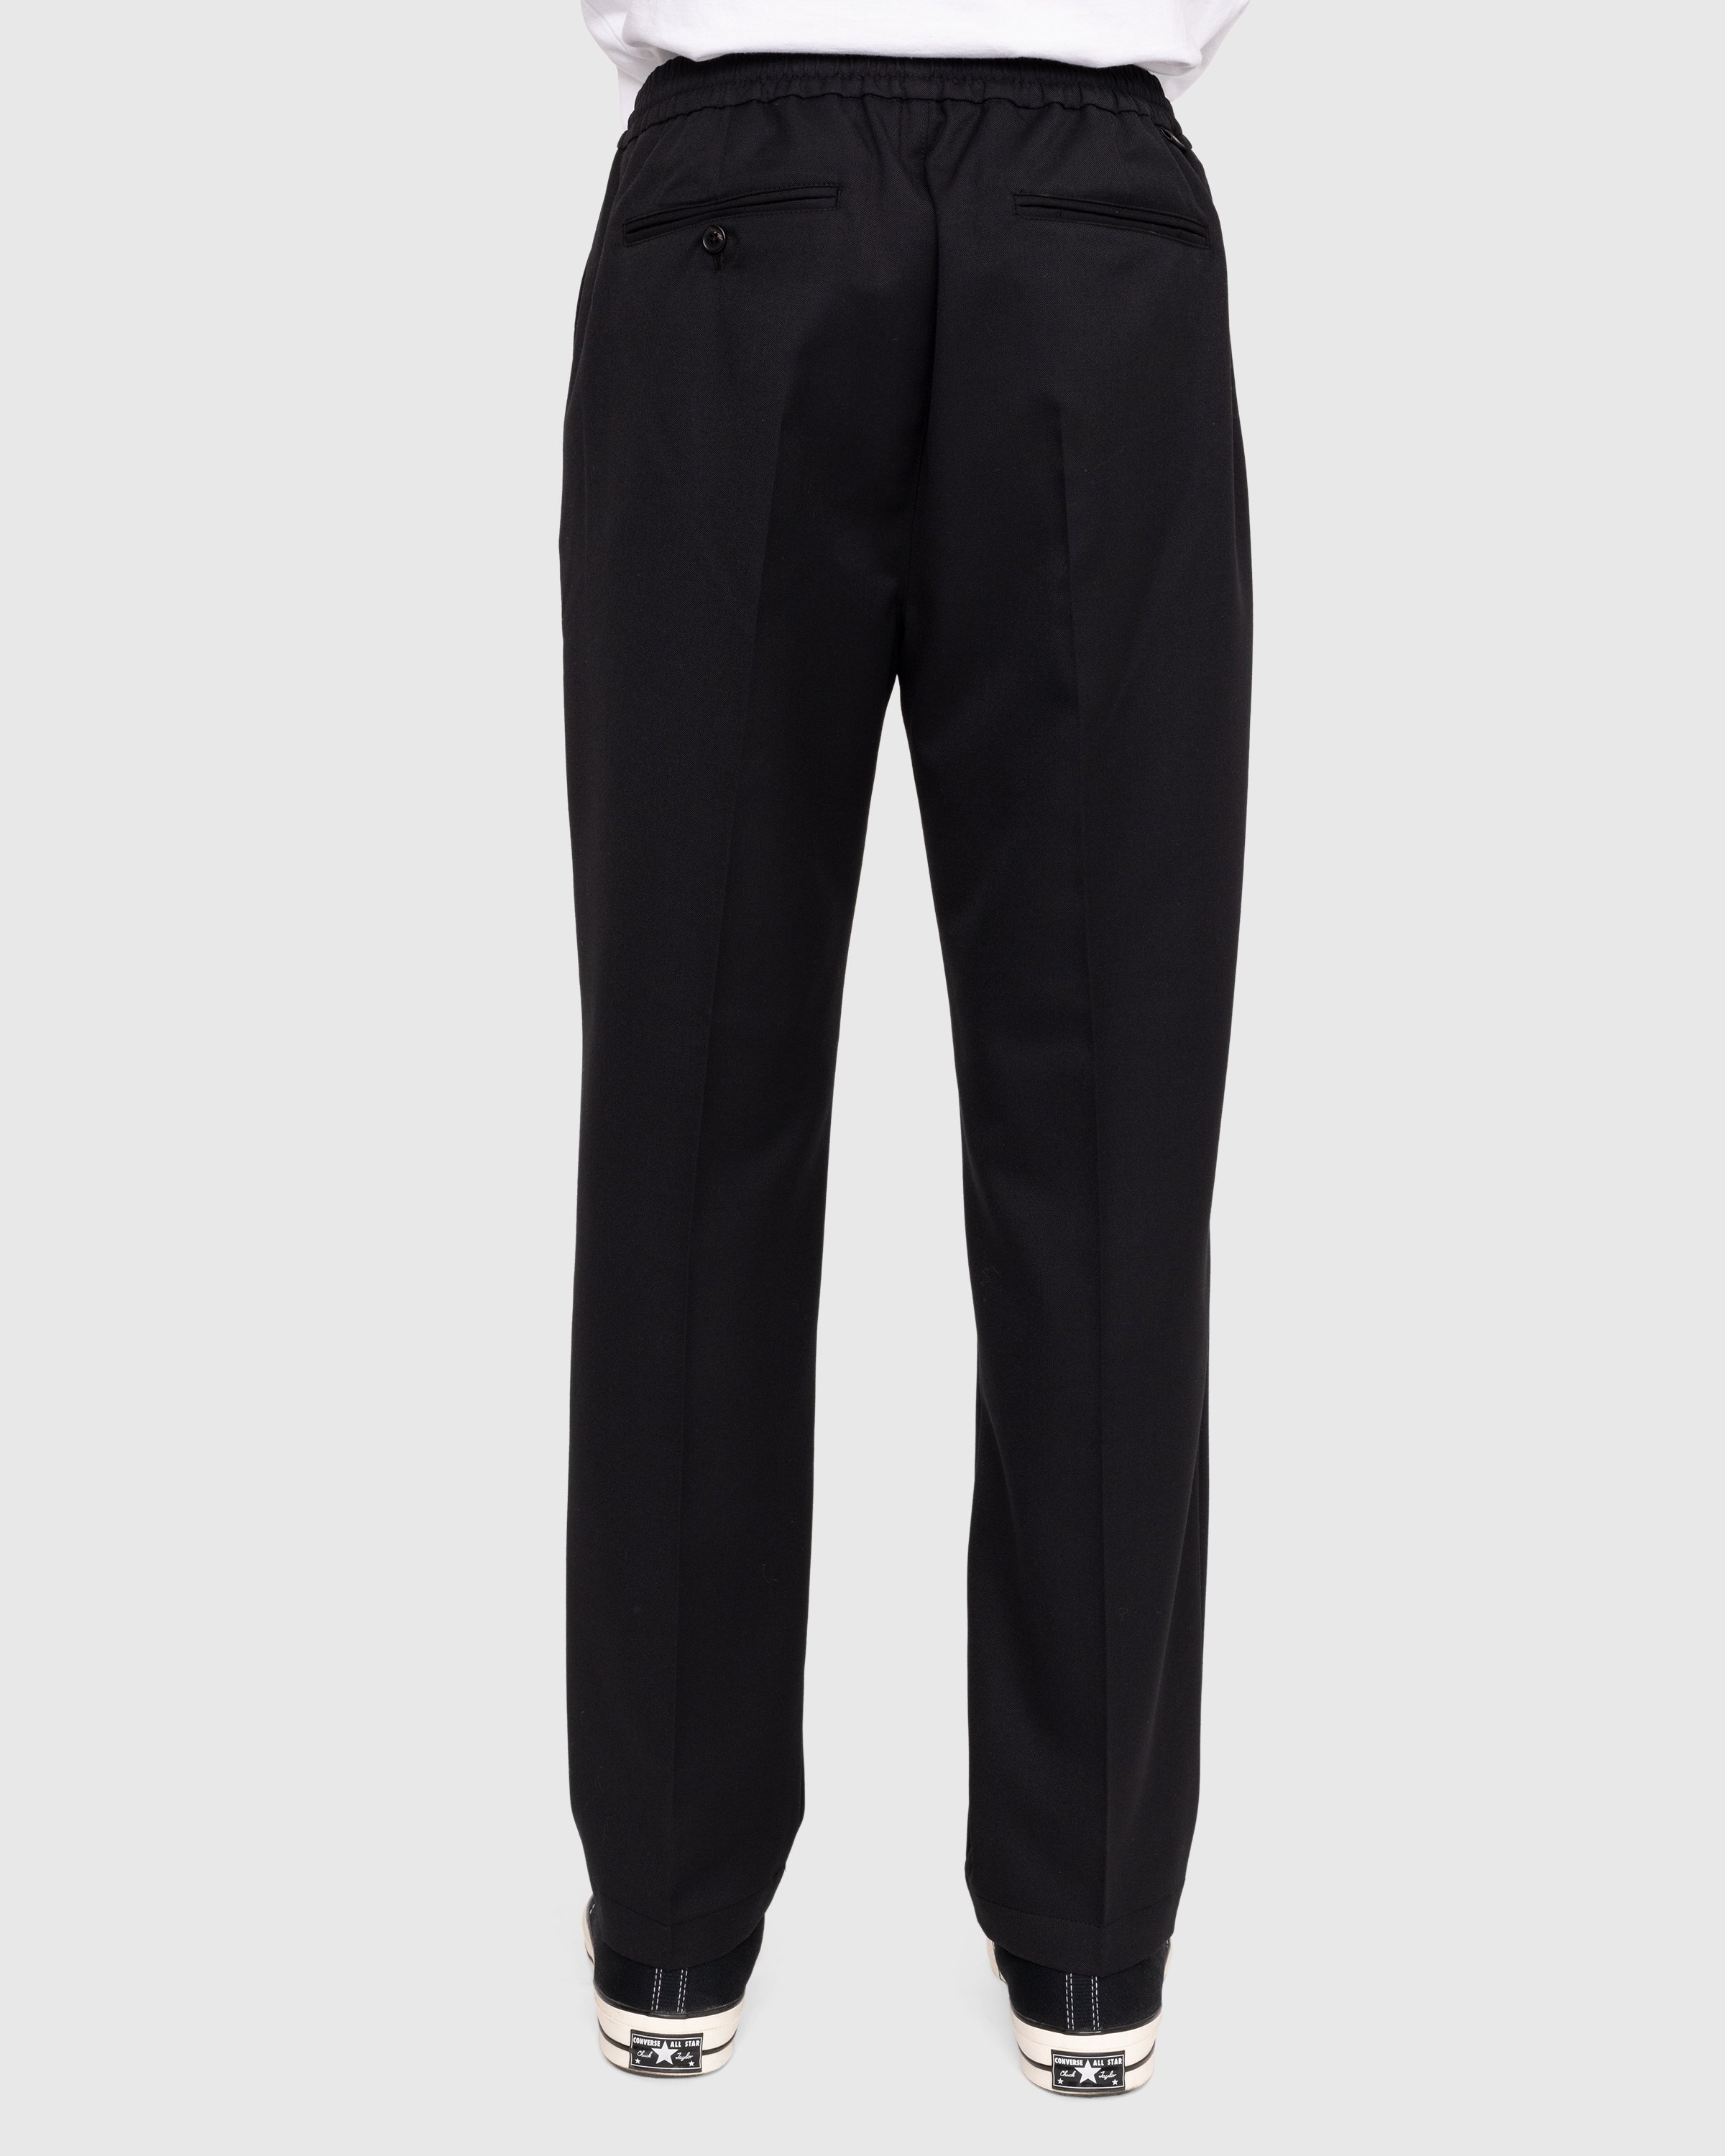 Highsnobiety – Wool Blend Elastic Pants Black - Pants - Black - Image 4